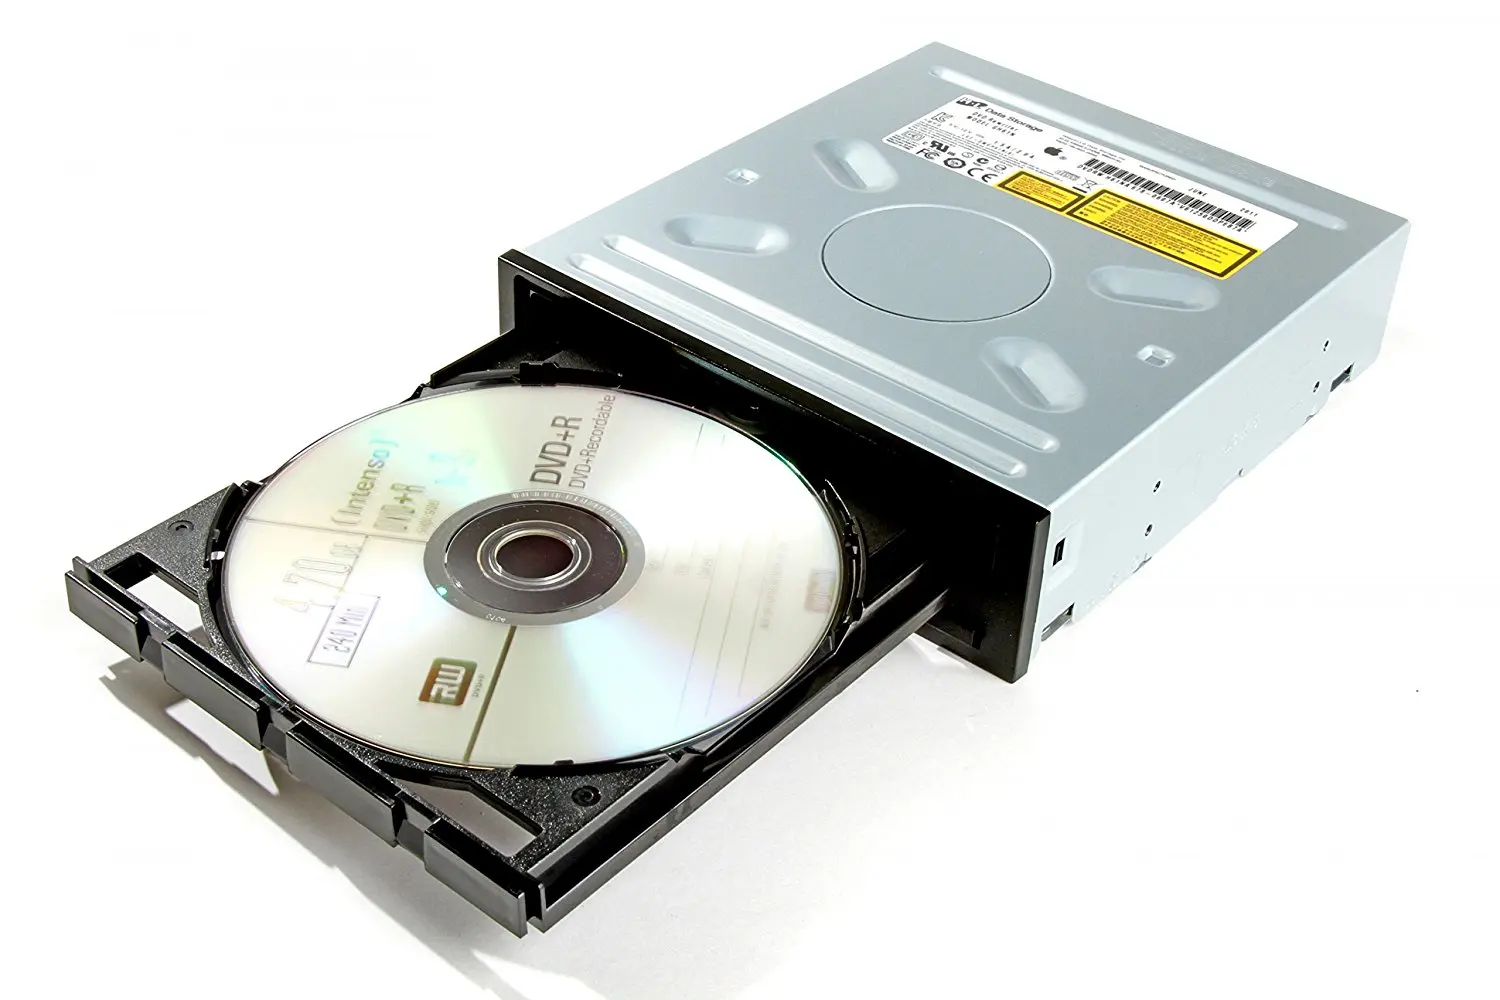 Привод DVD Ram$DVD+R/RW$CDRW. Накопители CD-ROM, CD-RW, DVD. DVD Hitachi-LG Slim Portable. DVD RW дисковод.